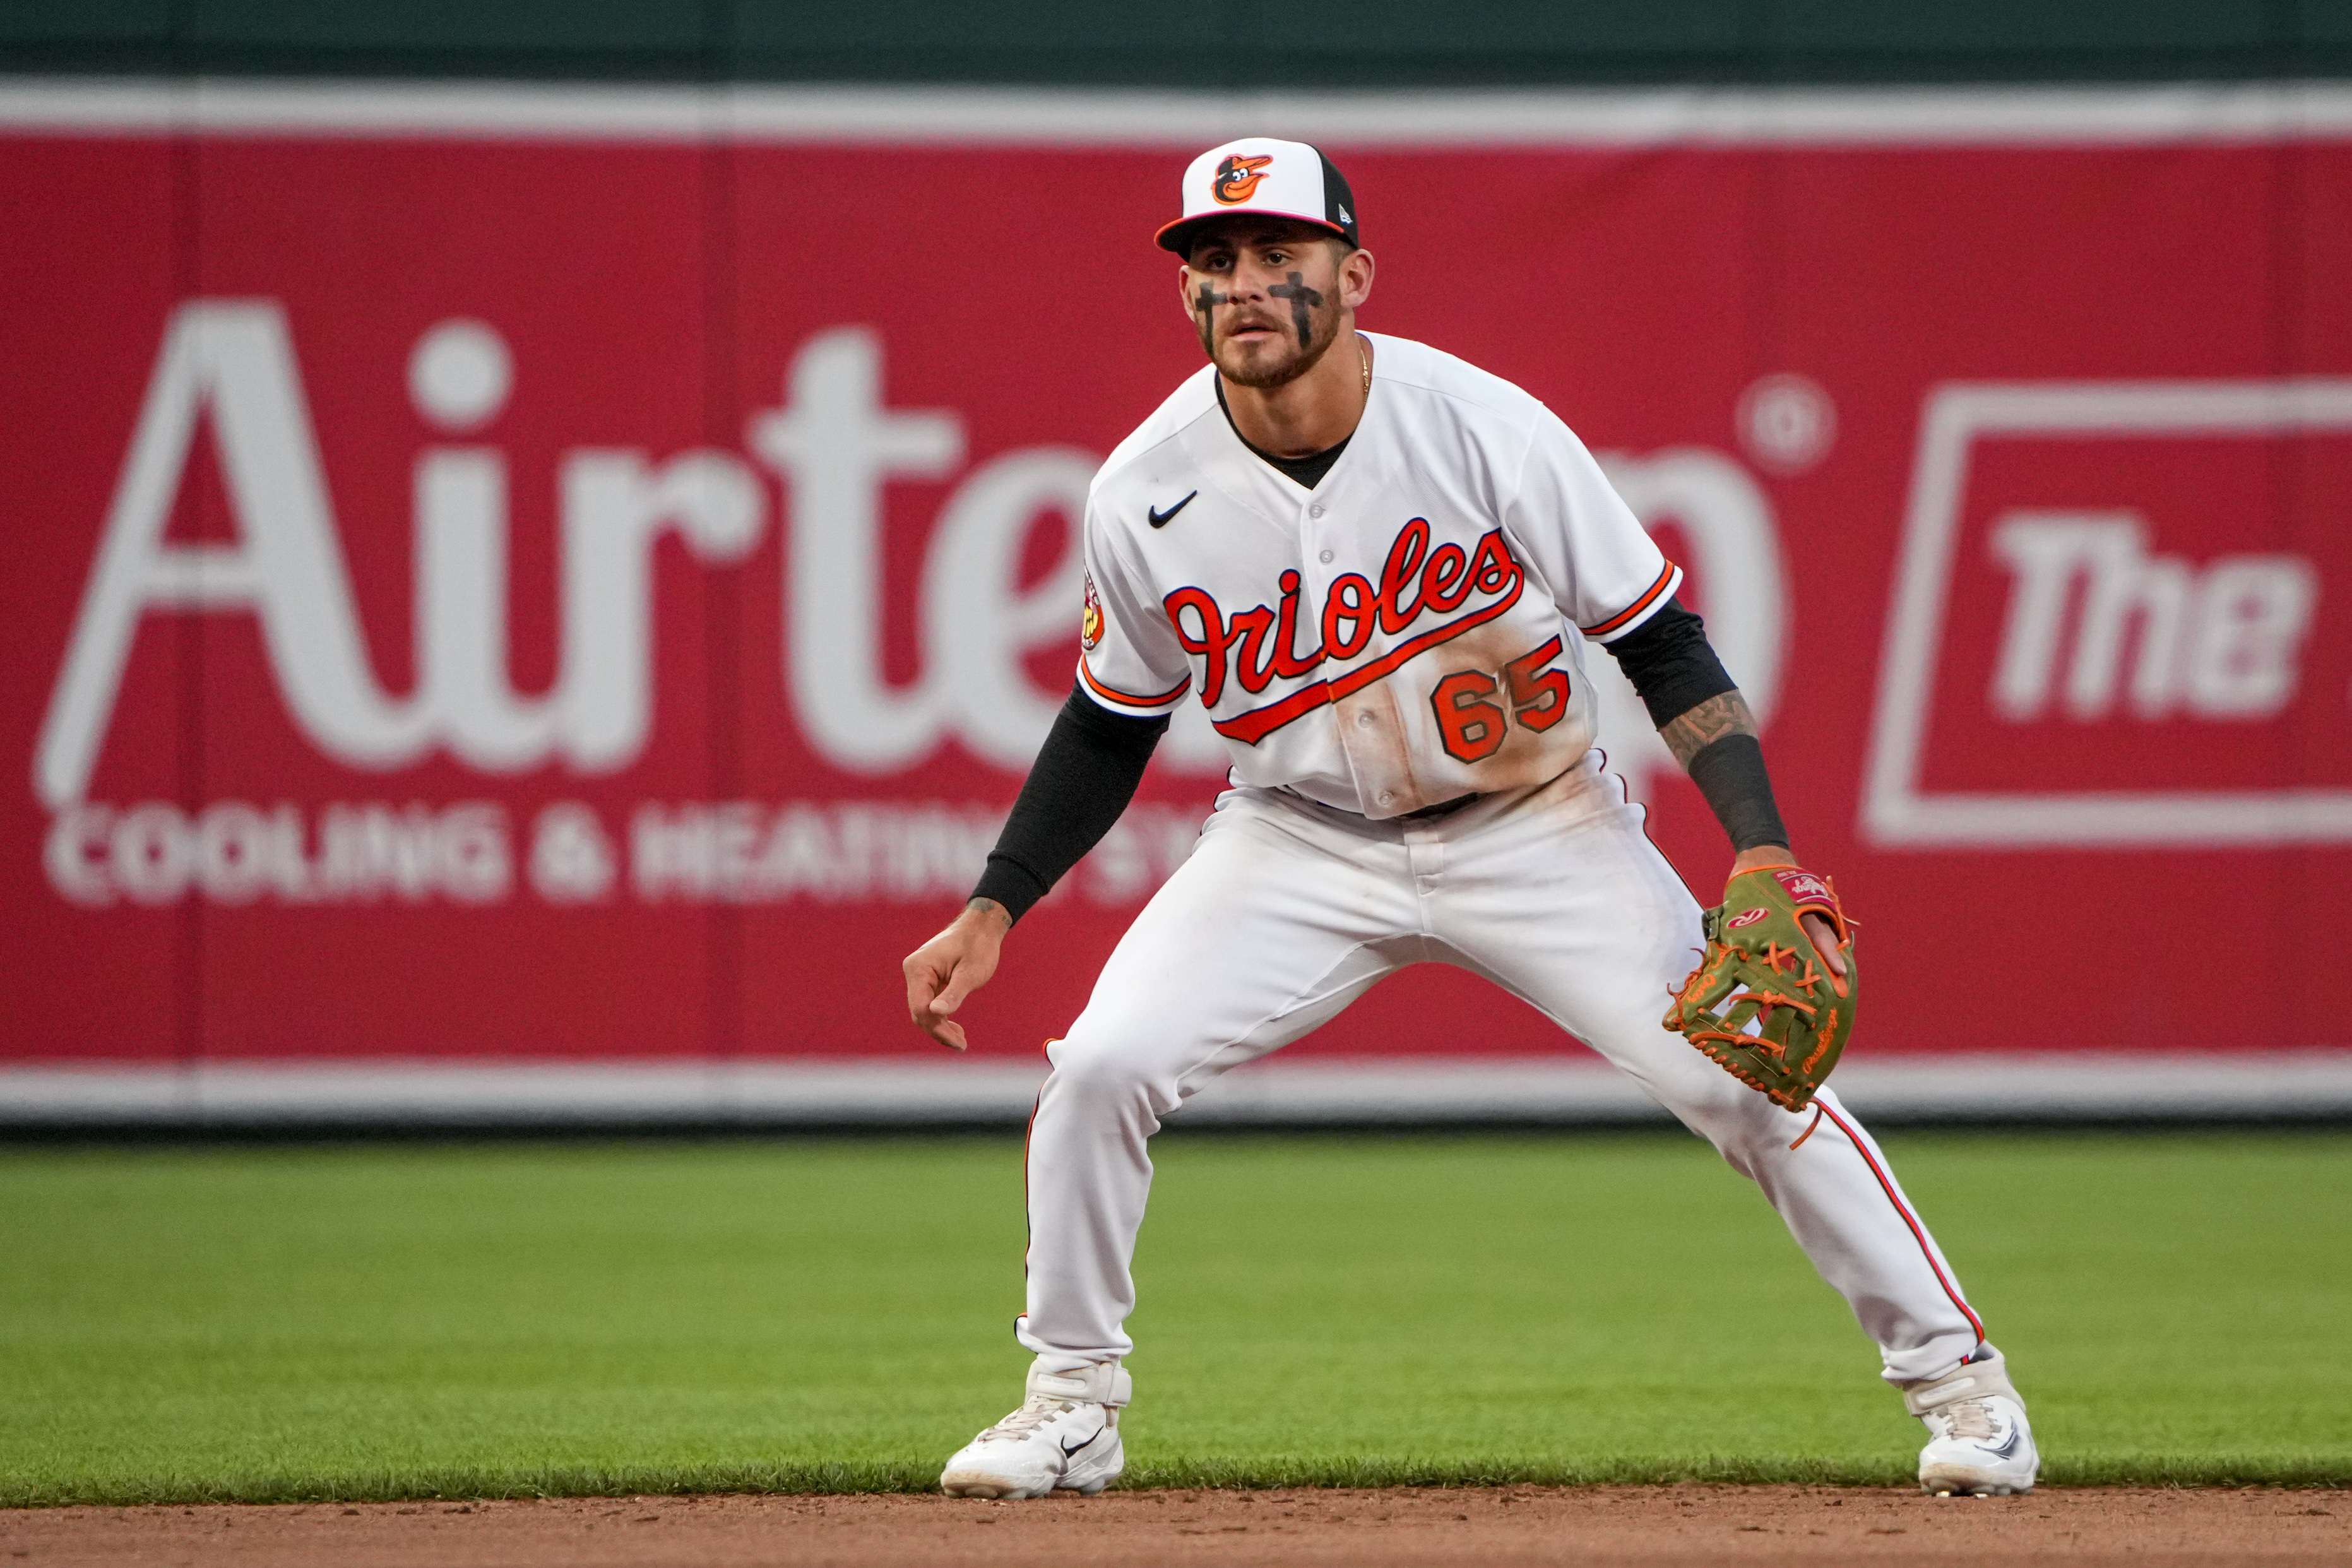 Baltimore Orioles: Kyle Stowers' Power Has Him Climbing Ranks